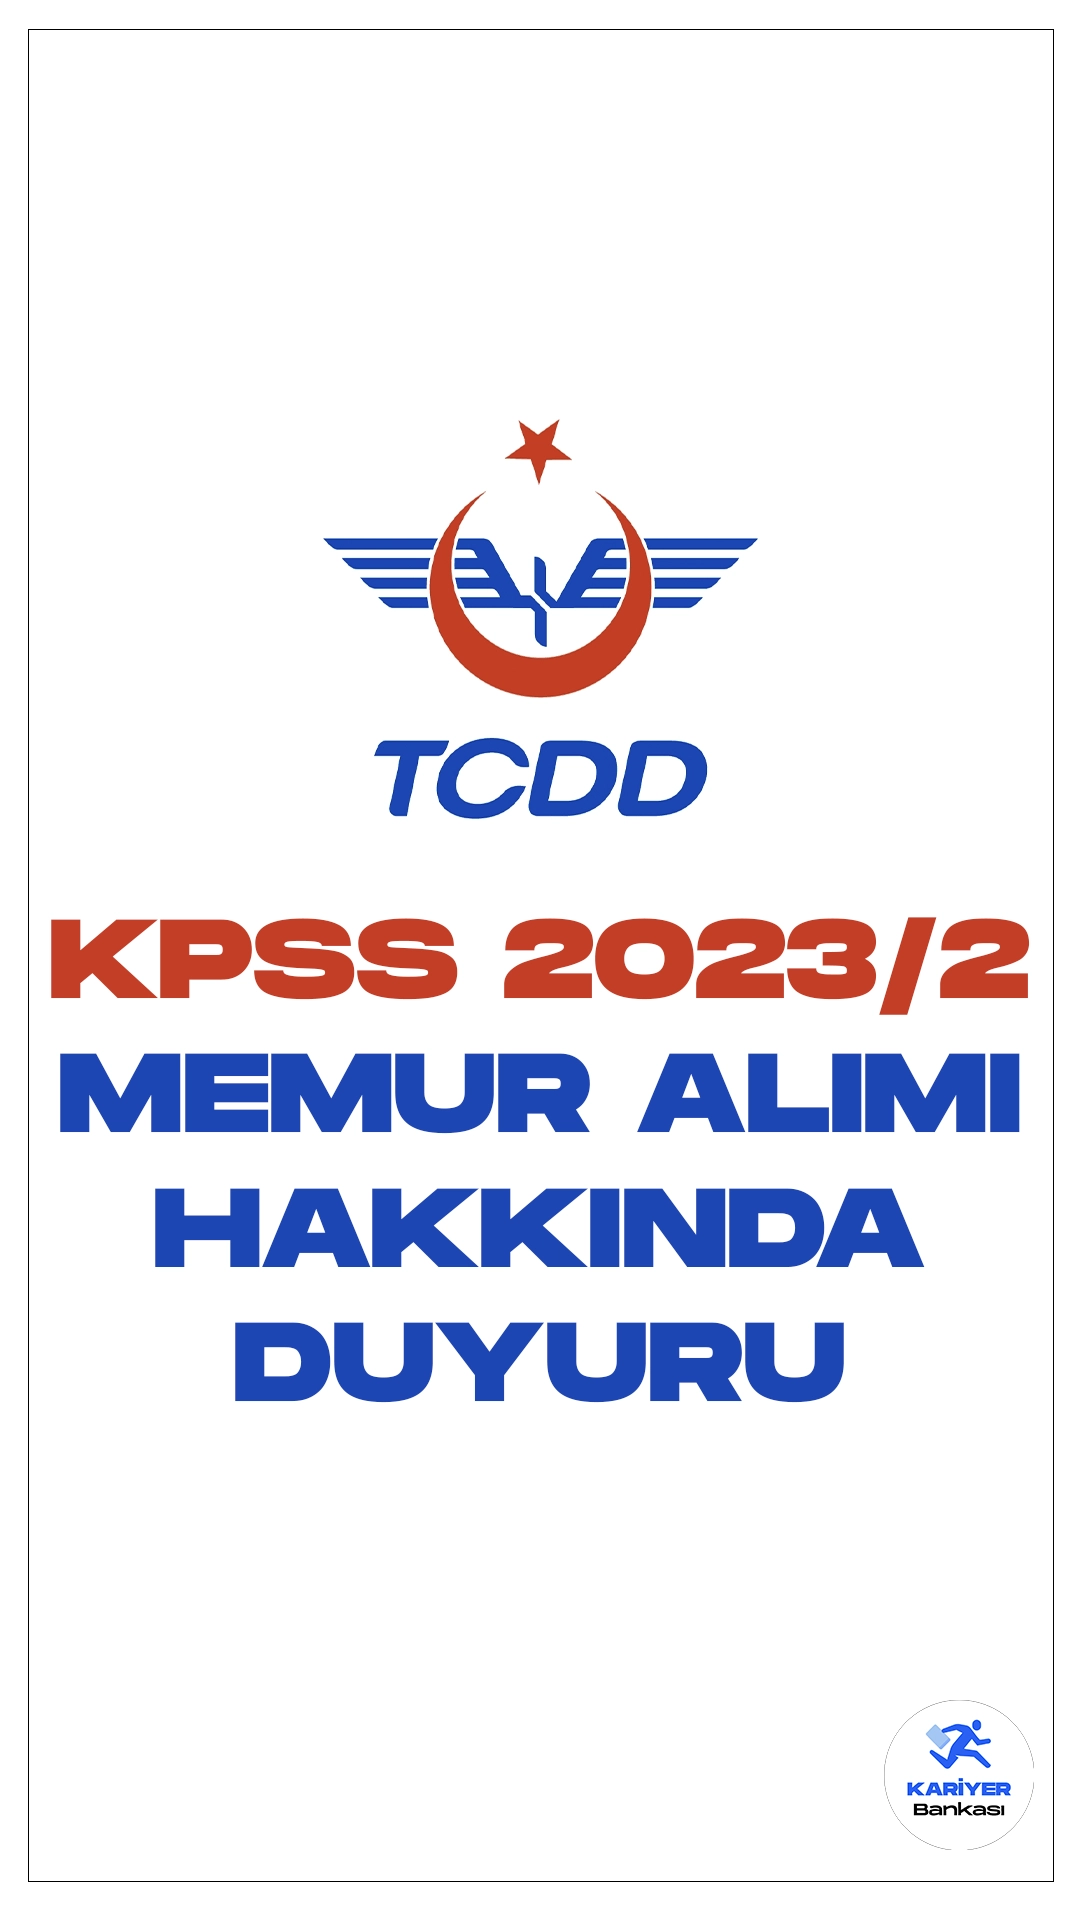 TCDD KPSS 2023/2 ile Memur Alımı Hakkında Duyuru Yayımlandı. TCDD Taşımacılık sayfası üzerinden yayımlanan duyuruda, KPSS 2023/2 merkezi atama kapsamında TCDD'ye yerleşen adayların istenilen belgeleri 9 Ocak – 2 Şubat 2024 tarihleri arasında TCDD Taşımacılık A.Ş. Genel Müdürlüğü İnsan Kaynakları ve Eğitim Dairesi Başkanlığına (Adres: Hacı Bayram Mahallesi Hipodrom Caddesi No: 3 Gar-Altındağ/Ankara) şahsen müracaat etmeleri gerektiği aktarıldı.